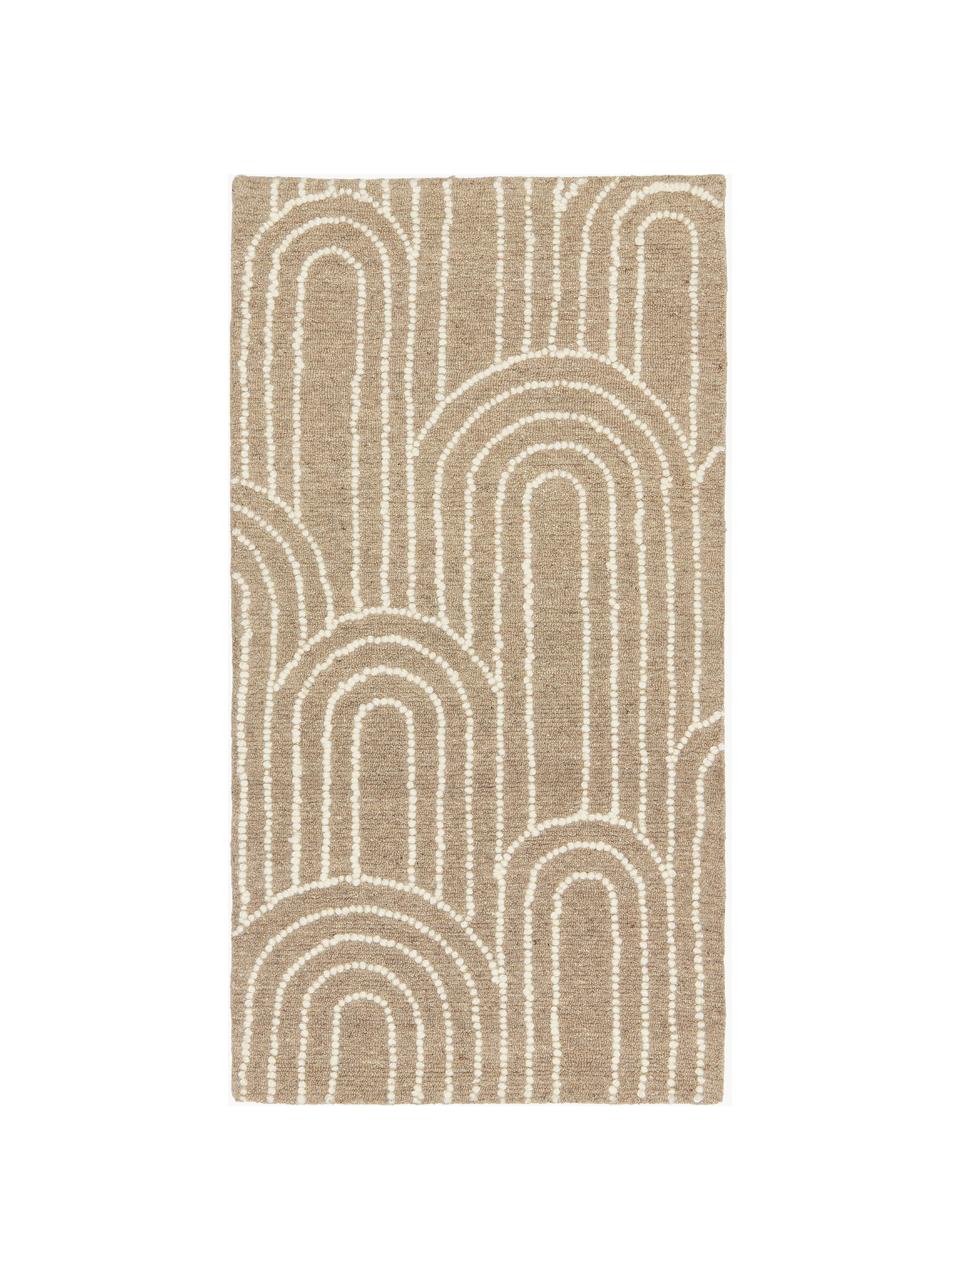 Ręcznie tuftowany dywan z wełny Arco, 100% wełna

Włókna dywanów wełnianych mogą nieznacznie rozluźniać się w pierwszych tygodniach użytkowania, co ustępuje po pewnym czasie, Beżowy, kremowobiały, we wzór, S 80 x D 150 cm (Rozmiar XS)